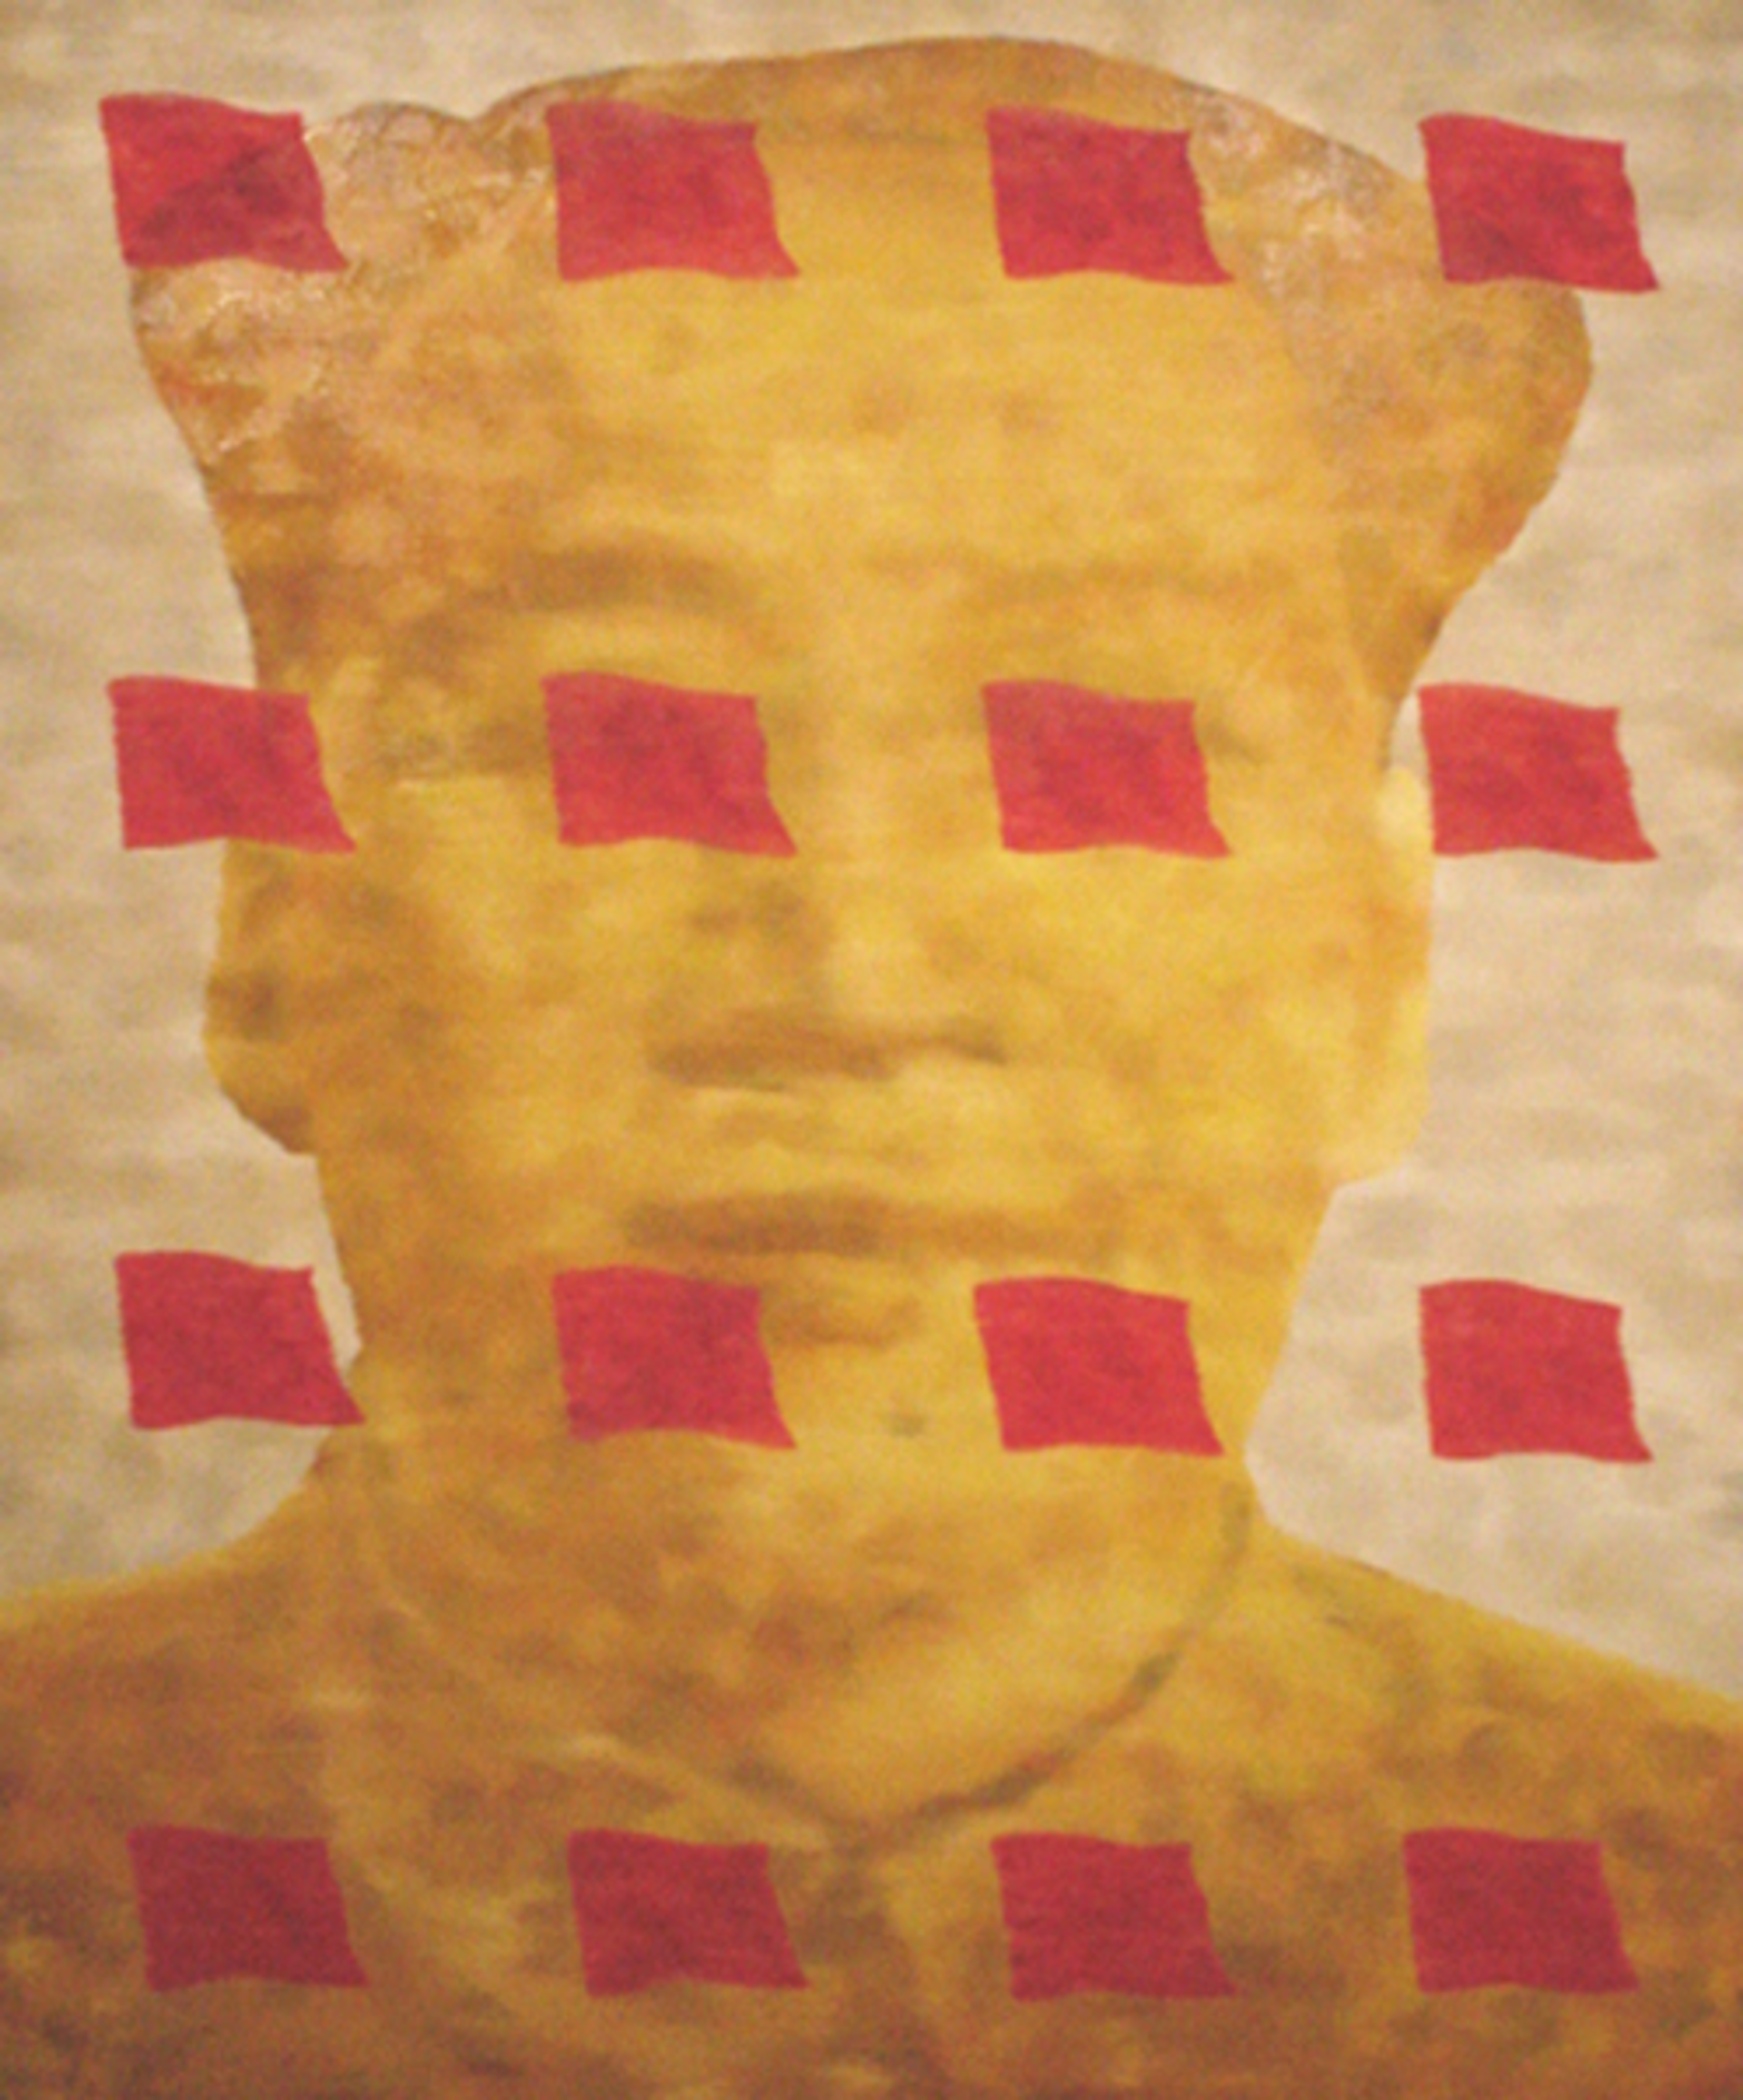 Mao #1 by Sun Zhe Zheng